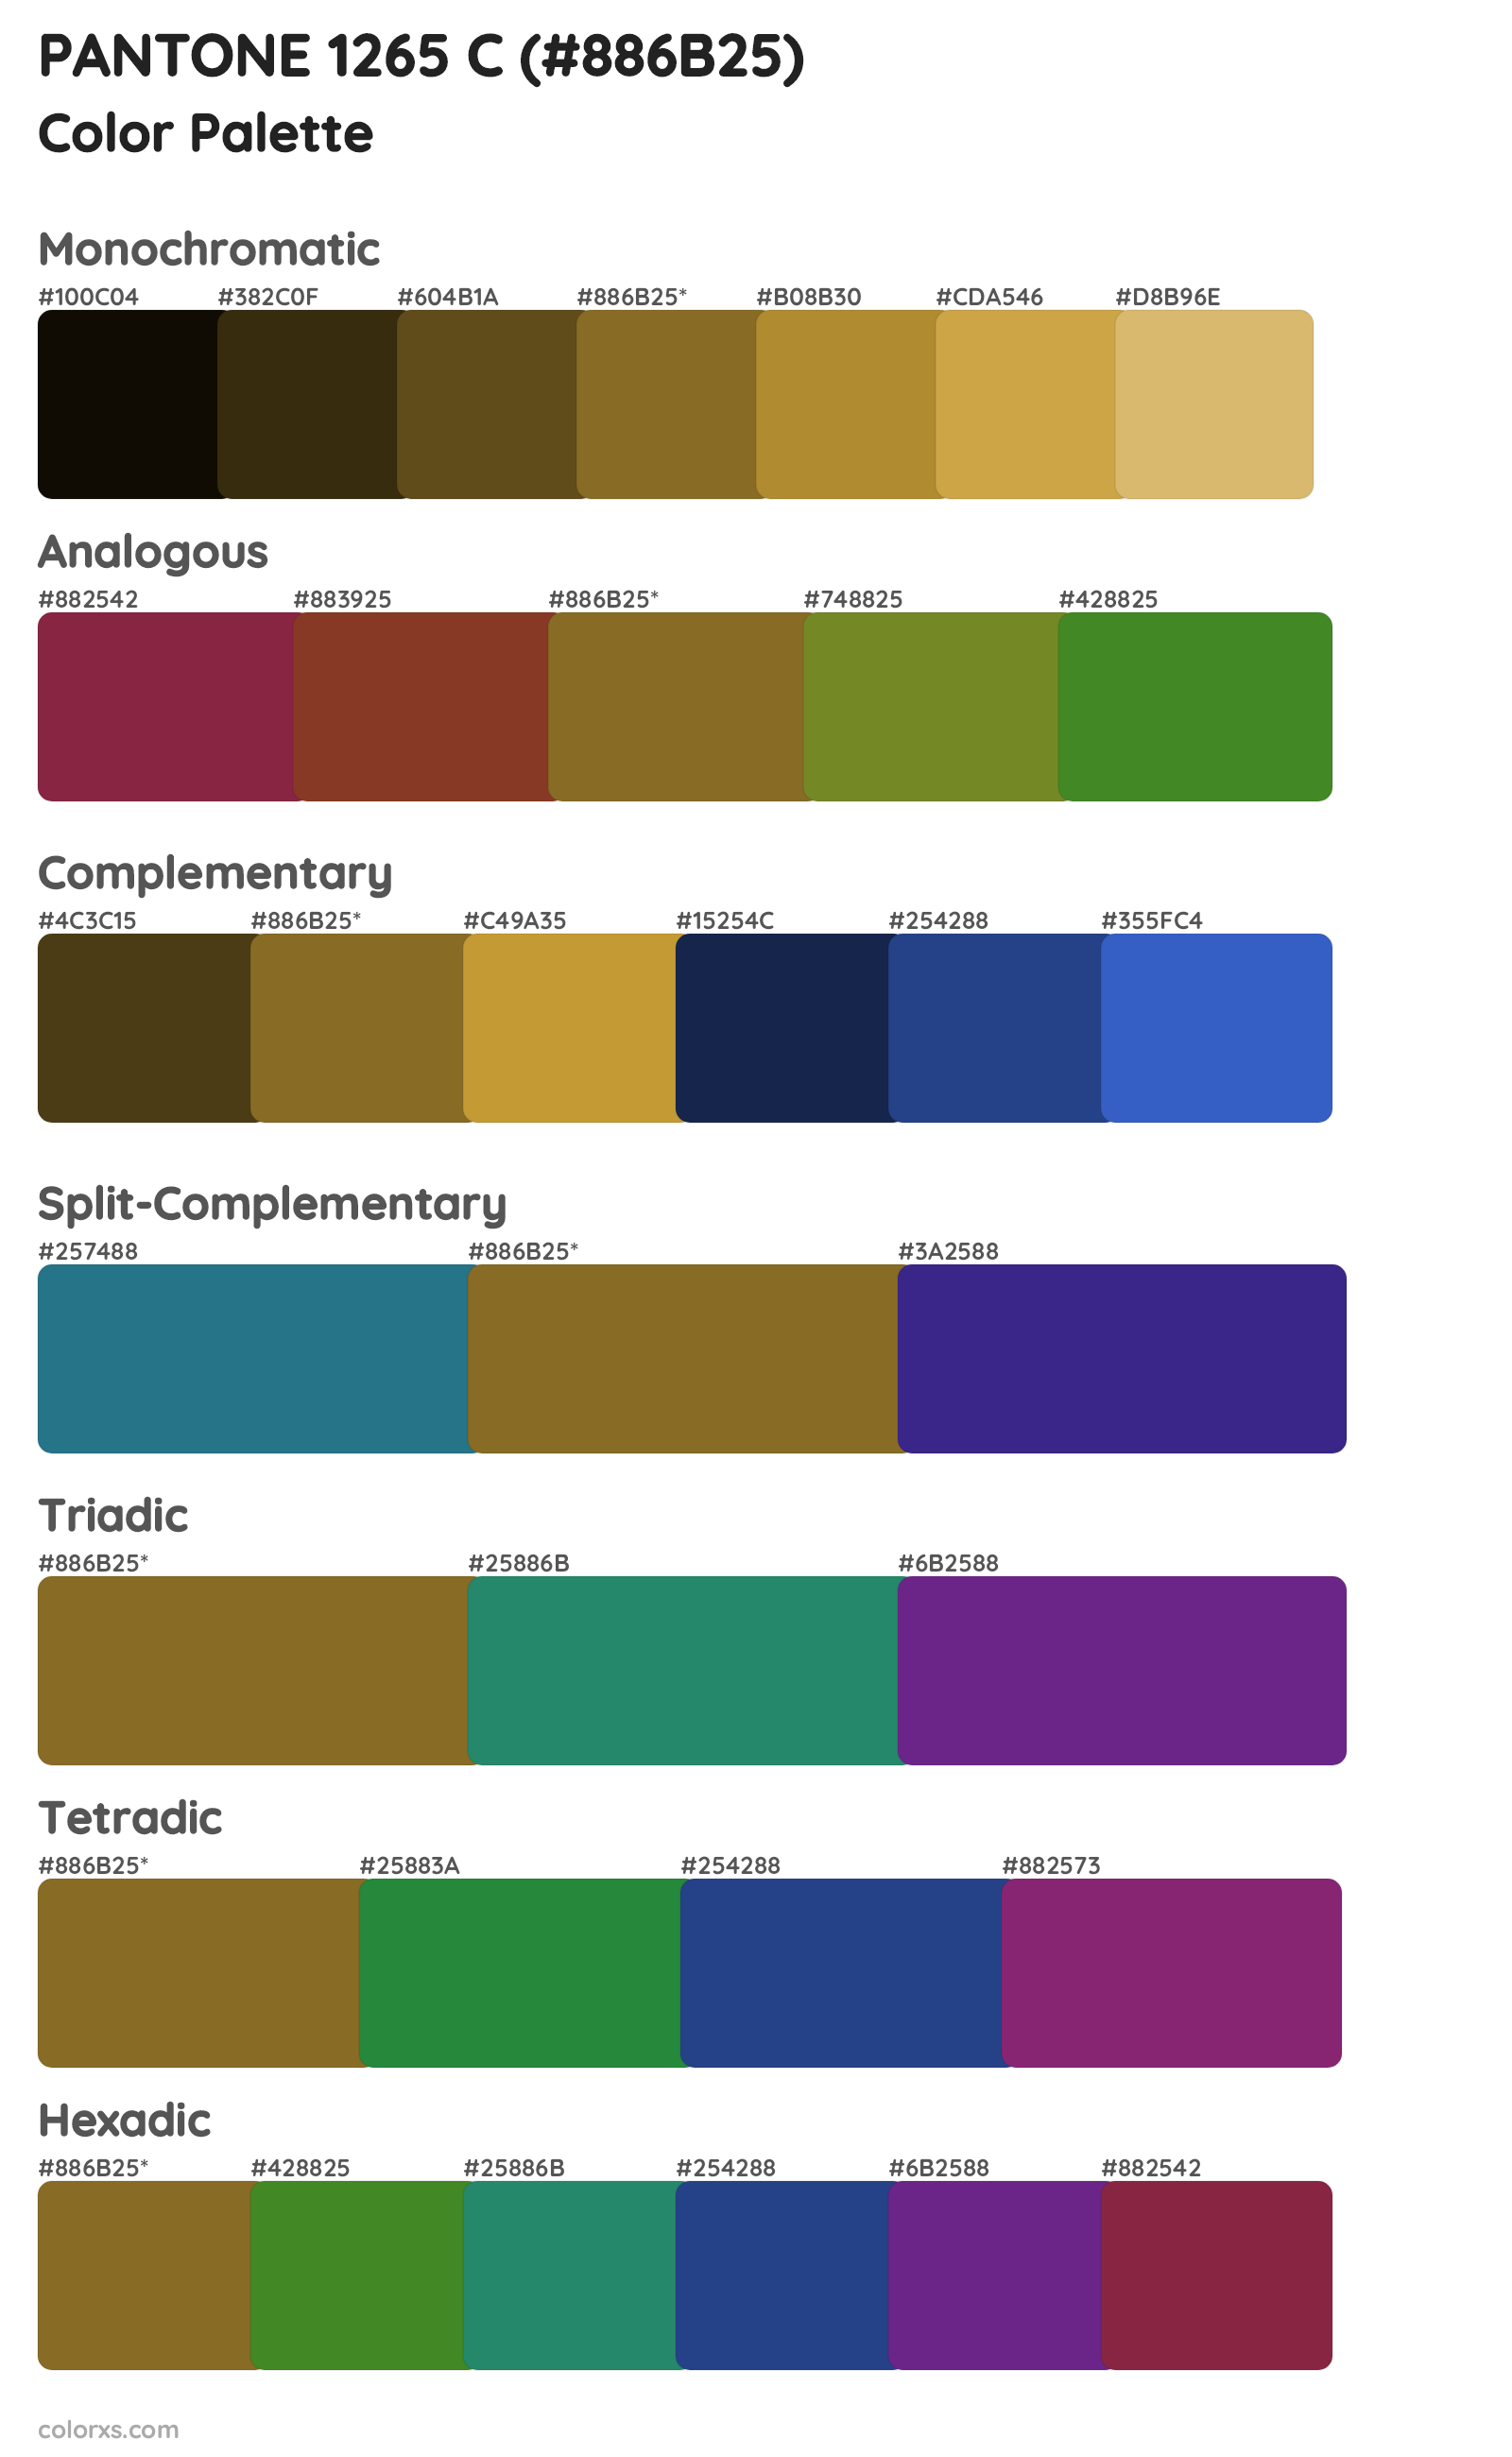 PANTONE 1265 C Color Scheme Palettes